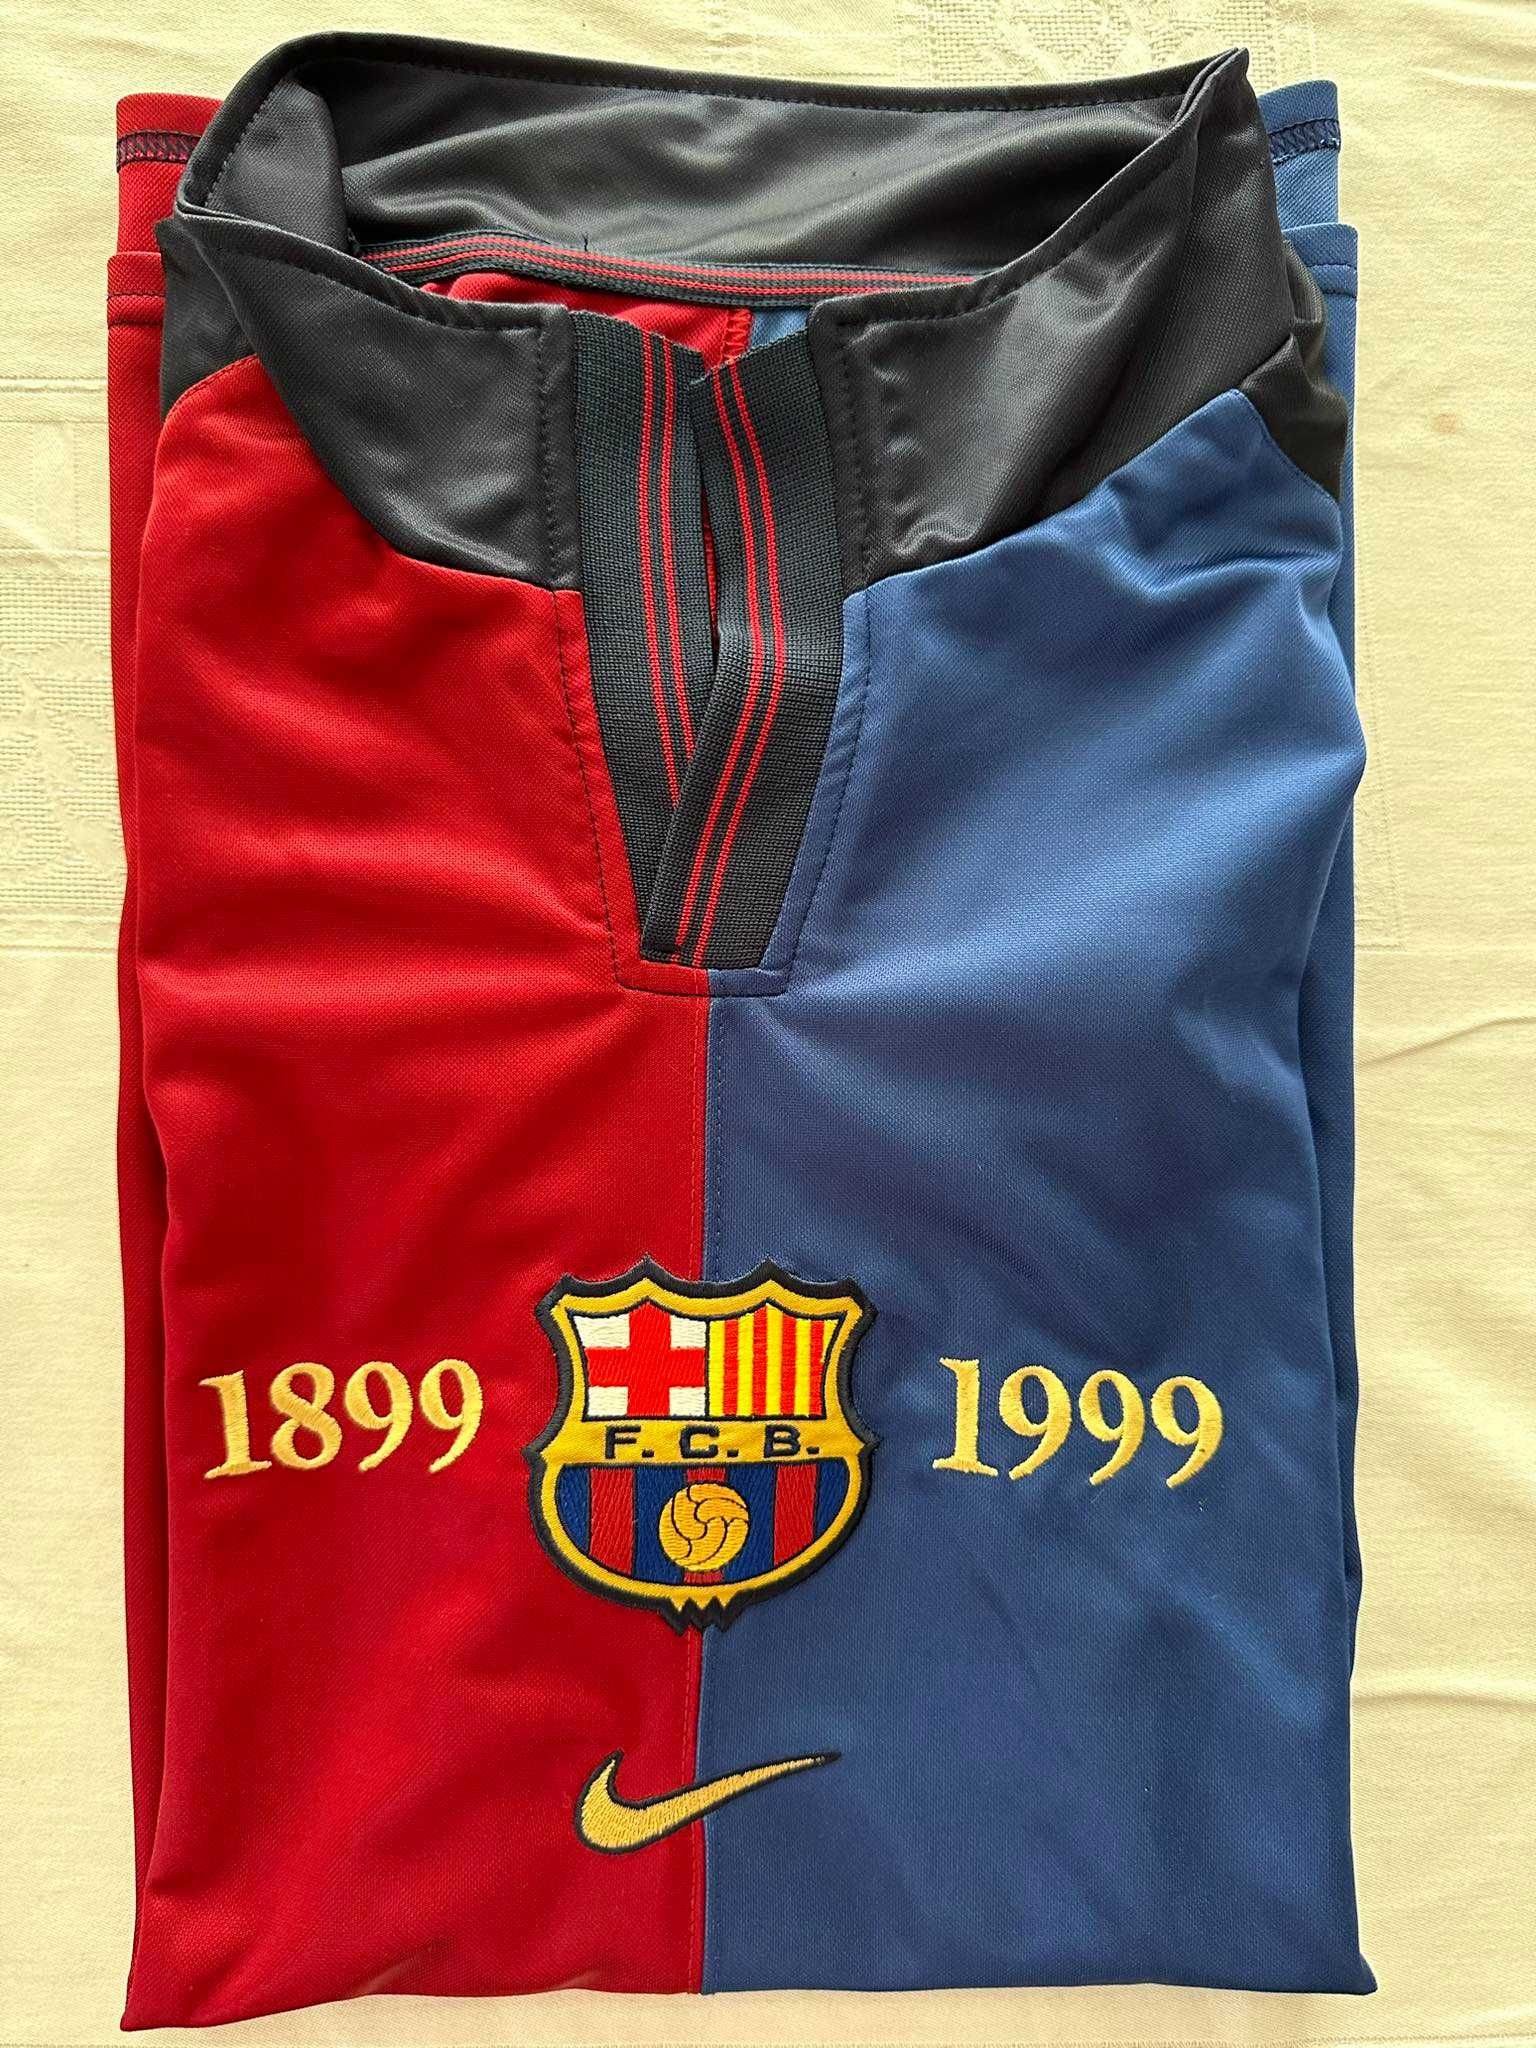 Оригинален екип на Барселона от 1999 година (100 години Барселона)